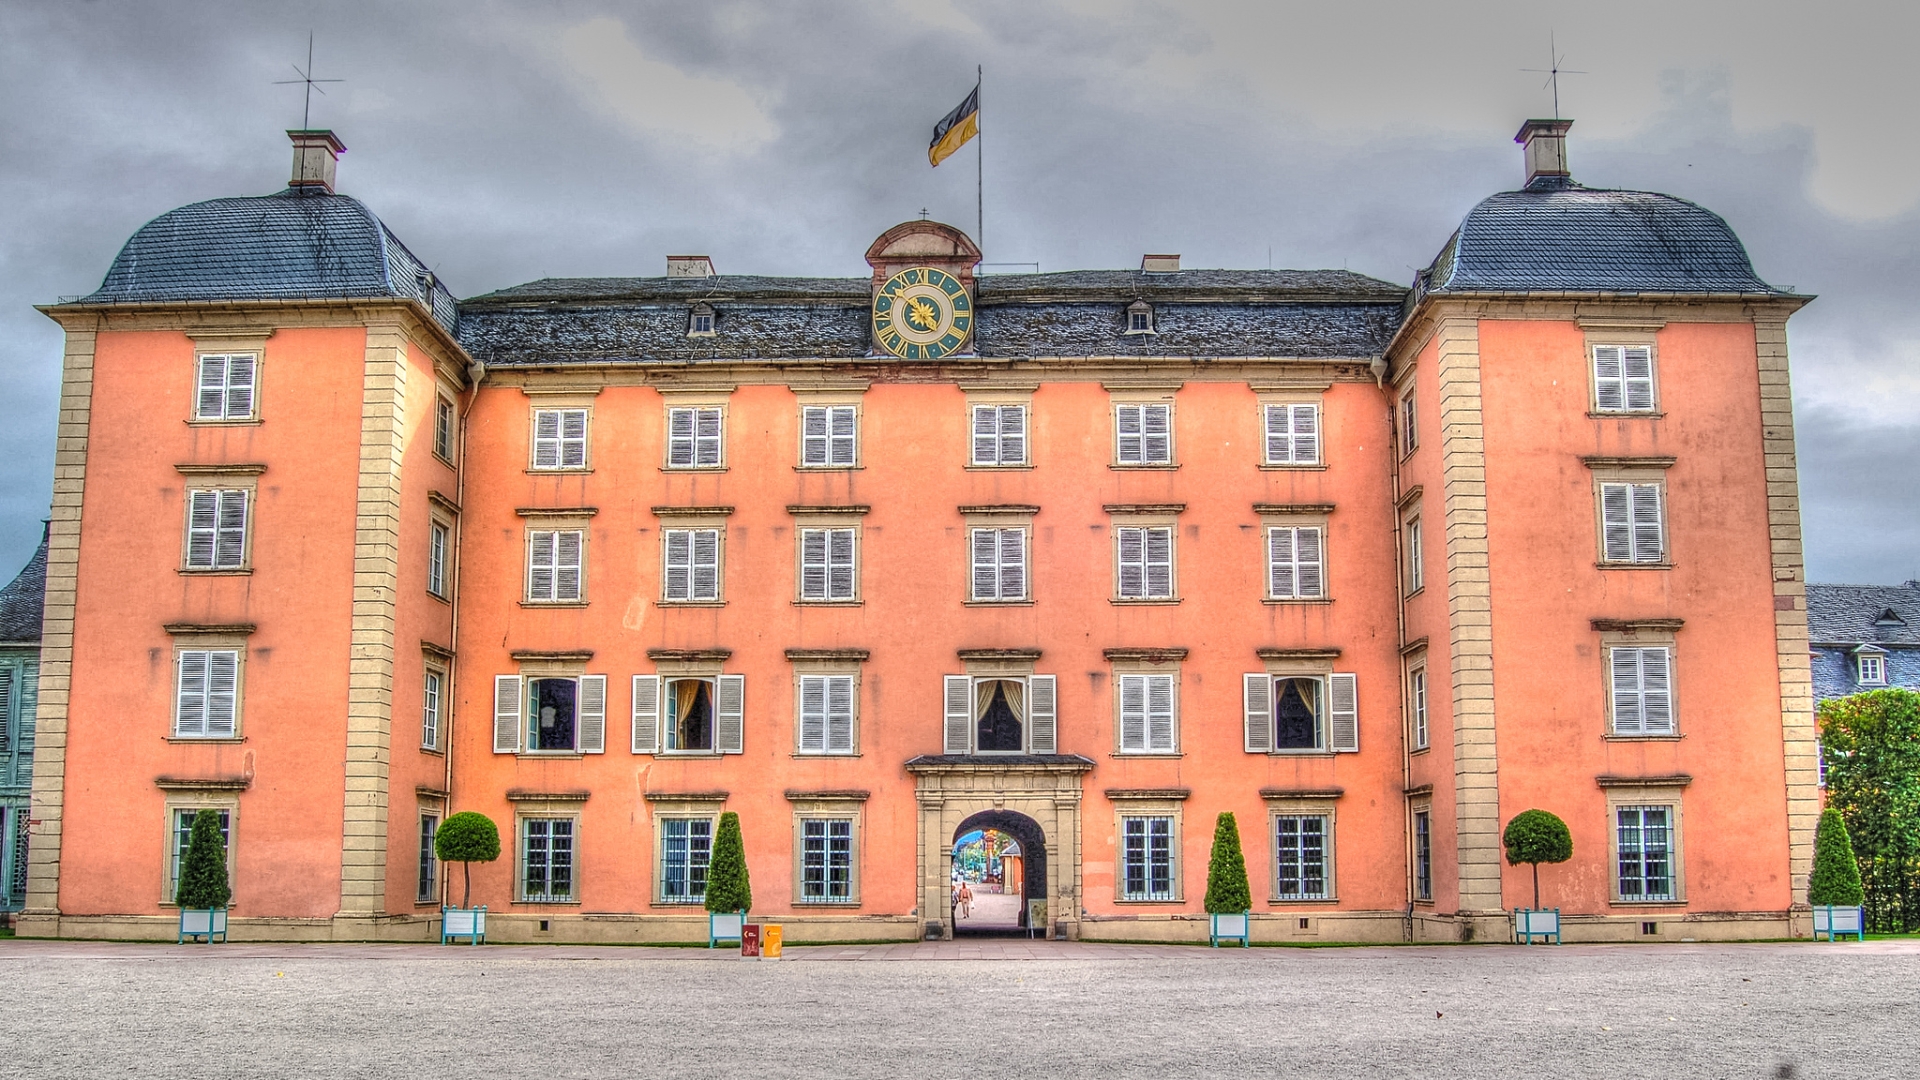 Man Made Schwetzingen Palace 1920x1080